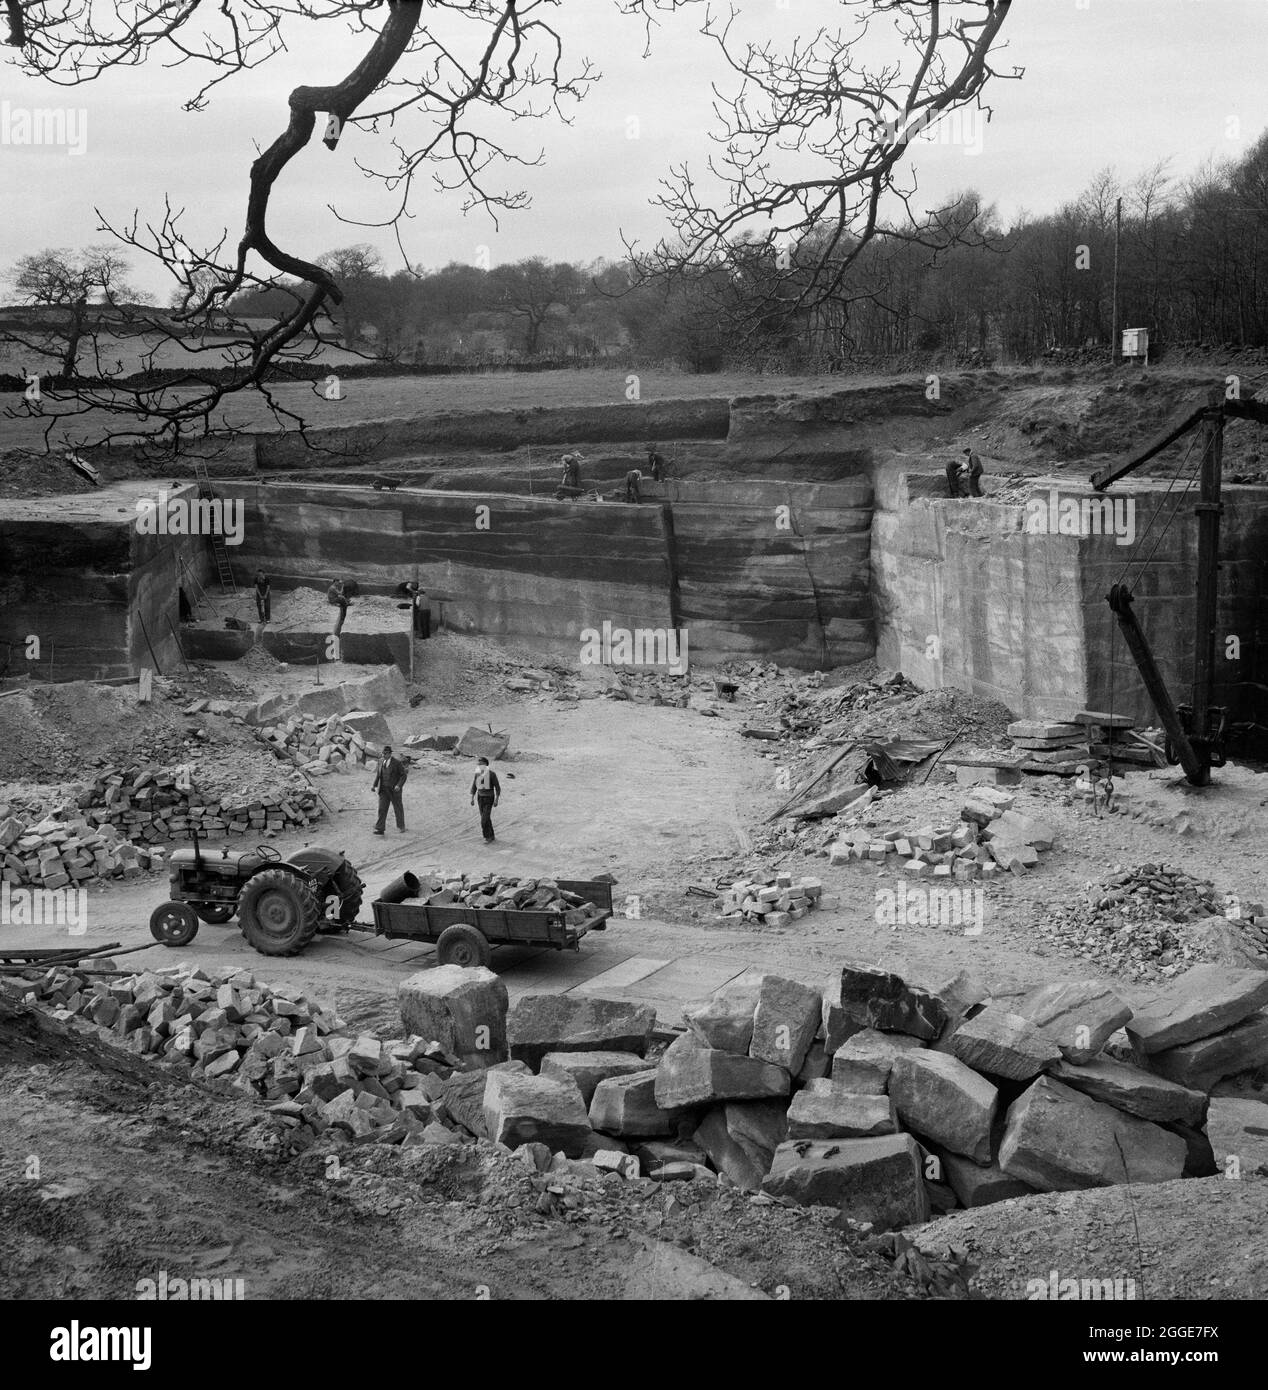 Ein Blick über den „Park Quarry“ in Great Gate, der Arbeiter zeigt, die Sandstein für den Bau der Coventry Cathedral bauen. 30,000 Tonnen rosaroten Sandsteins wurden von diesem Steinbruch, der sich im Besitz von Stanton und Bettany Ltd befindet, und einem weiteren Steinbruch in der Nähe, dem sogenannten Fielding's Quarry, geliefert. Stockfoto